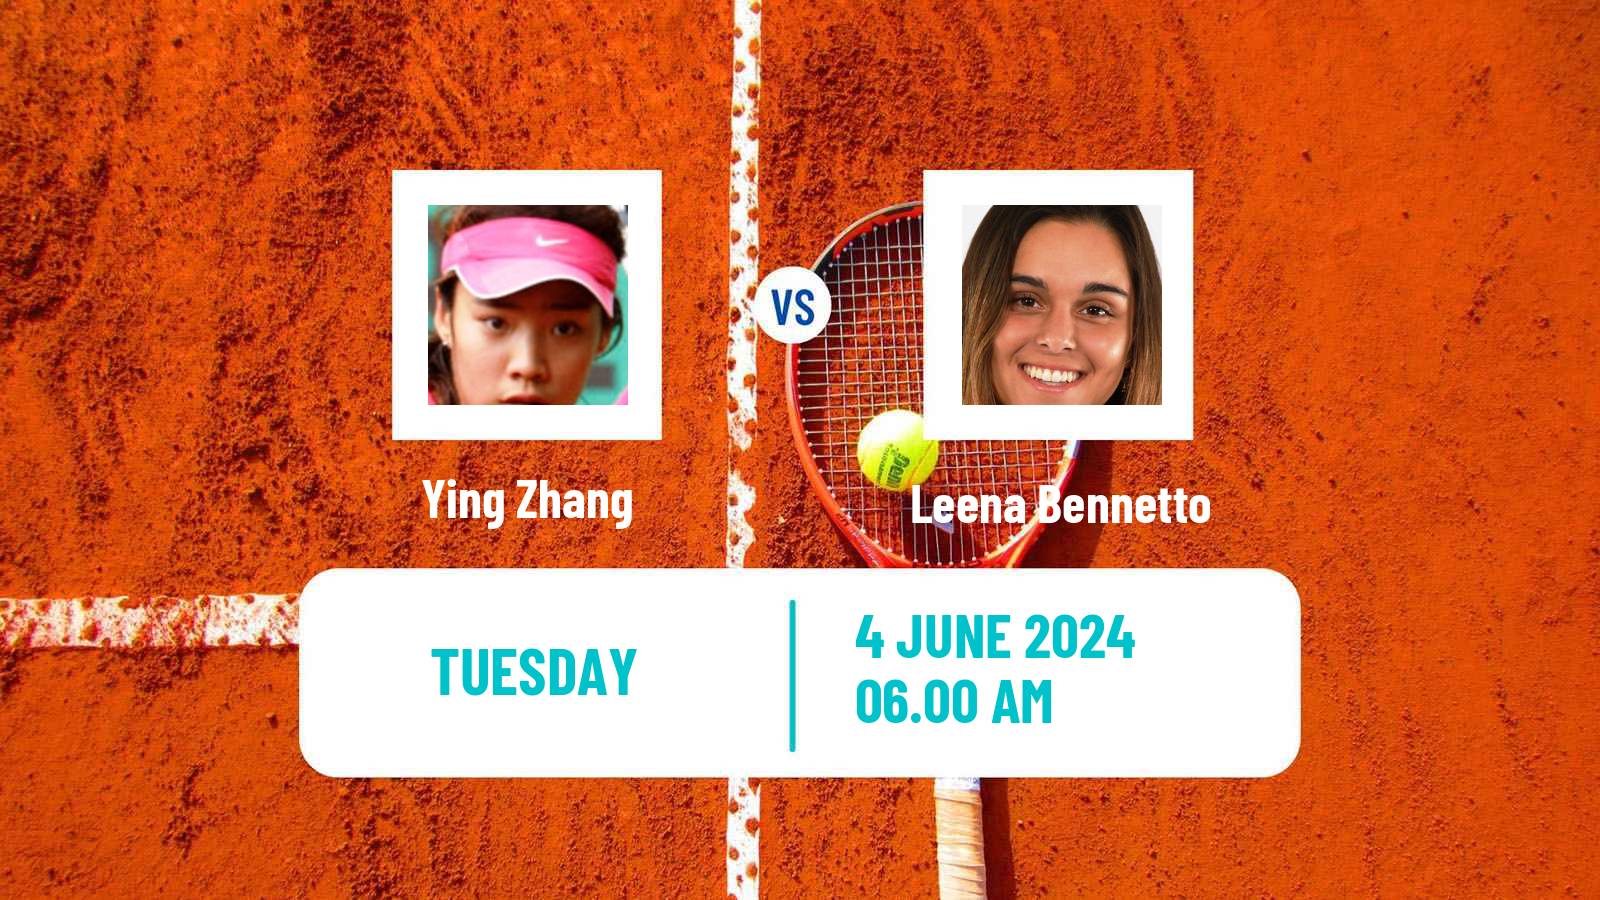 Tennis ITF W15 Monastir 21 Women Ying Zhang - Leena Bennetto